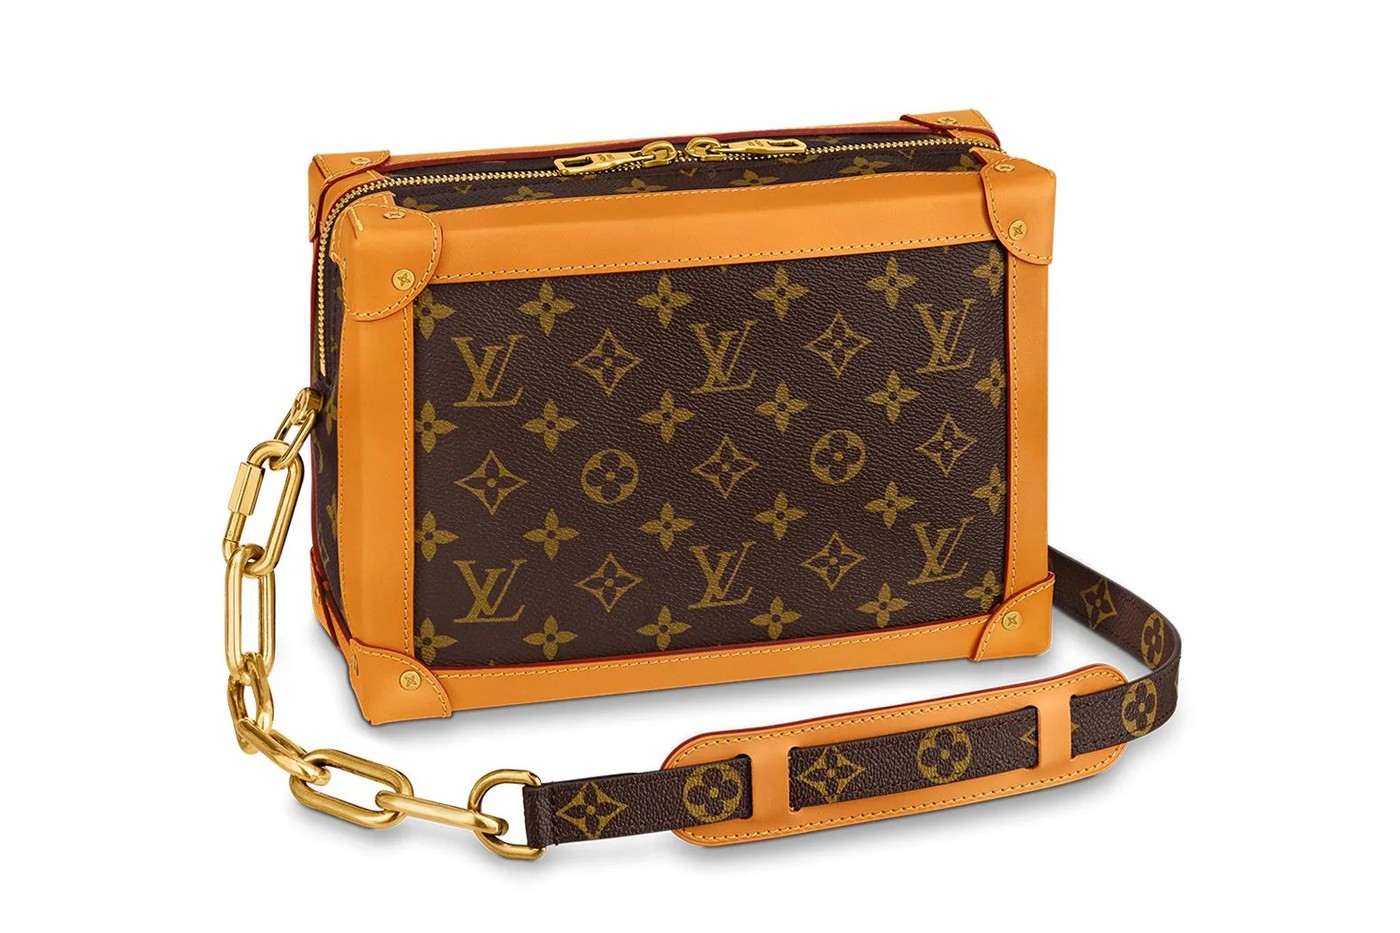 Louis Vuitton выпустил новые сумки по мотивам своих знаменитых сундуков для путешествий (фото 8)